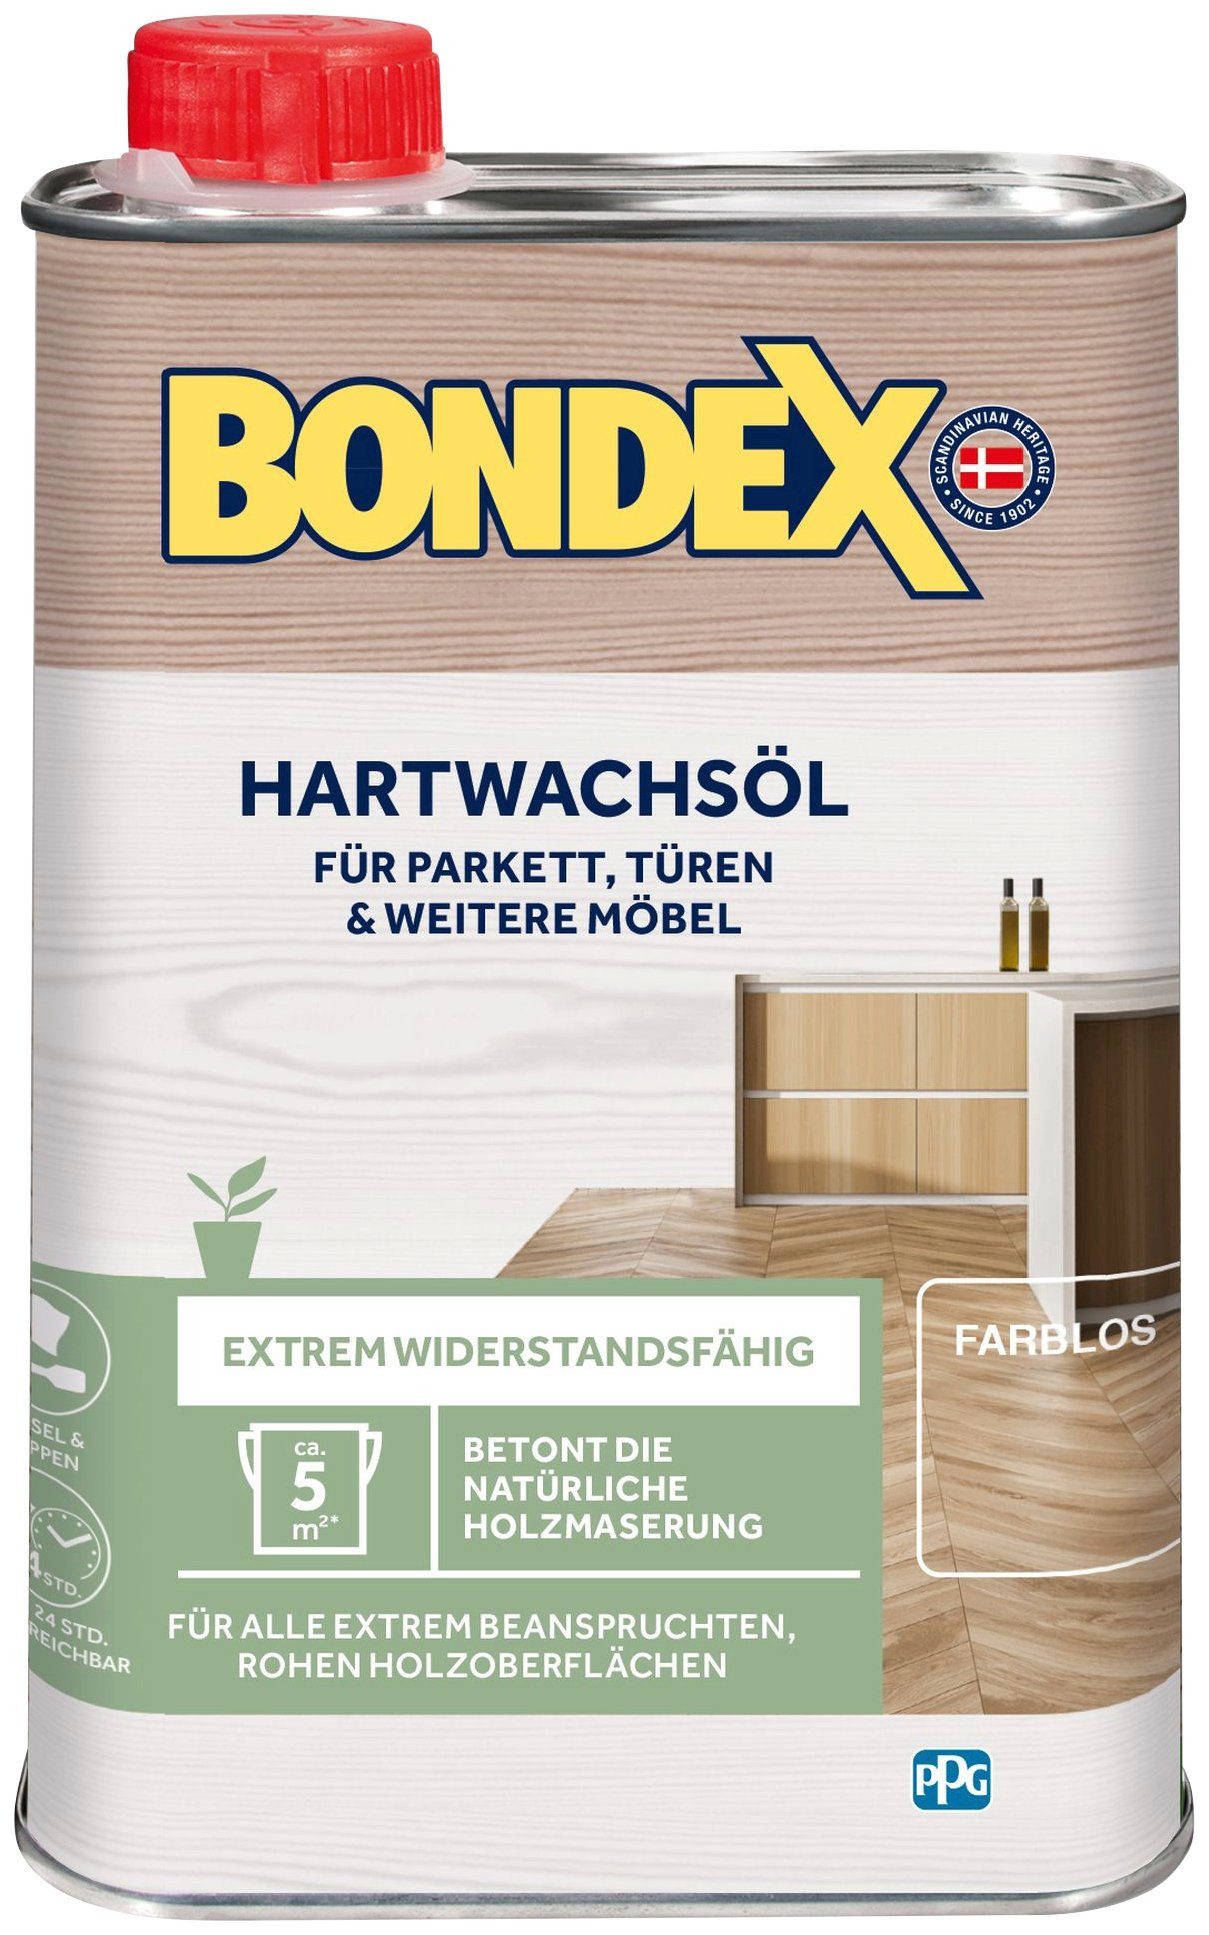 Bondex Holzöl Liter Inhalt HARTWACHSÖL, Natur, 0,75